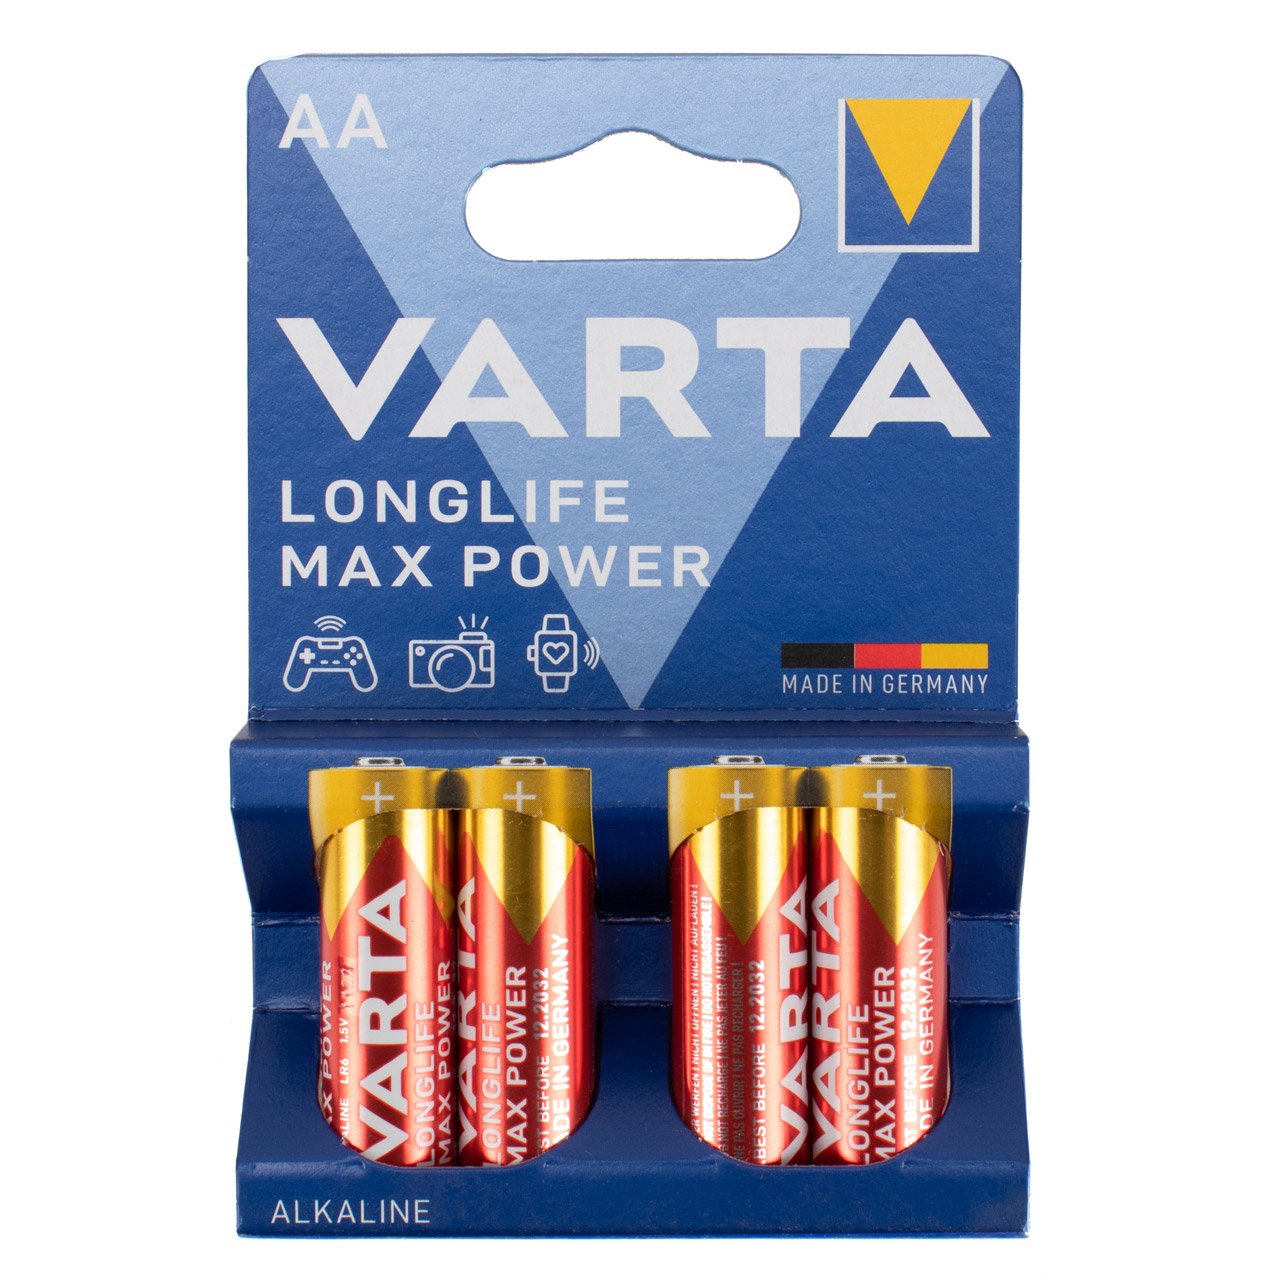 20x VARTA LONGLIFE MAX POWER ALKALINE Batterie AA MIGNON 4706 LR6 MN1500 1,5V